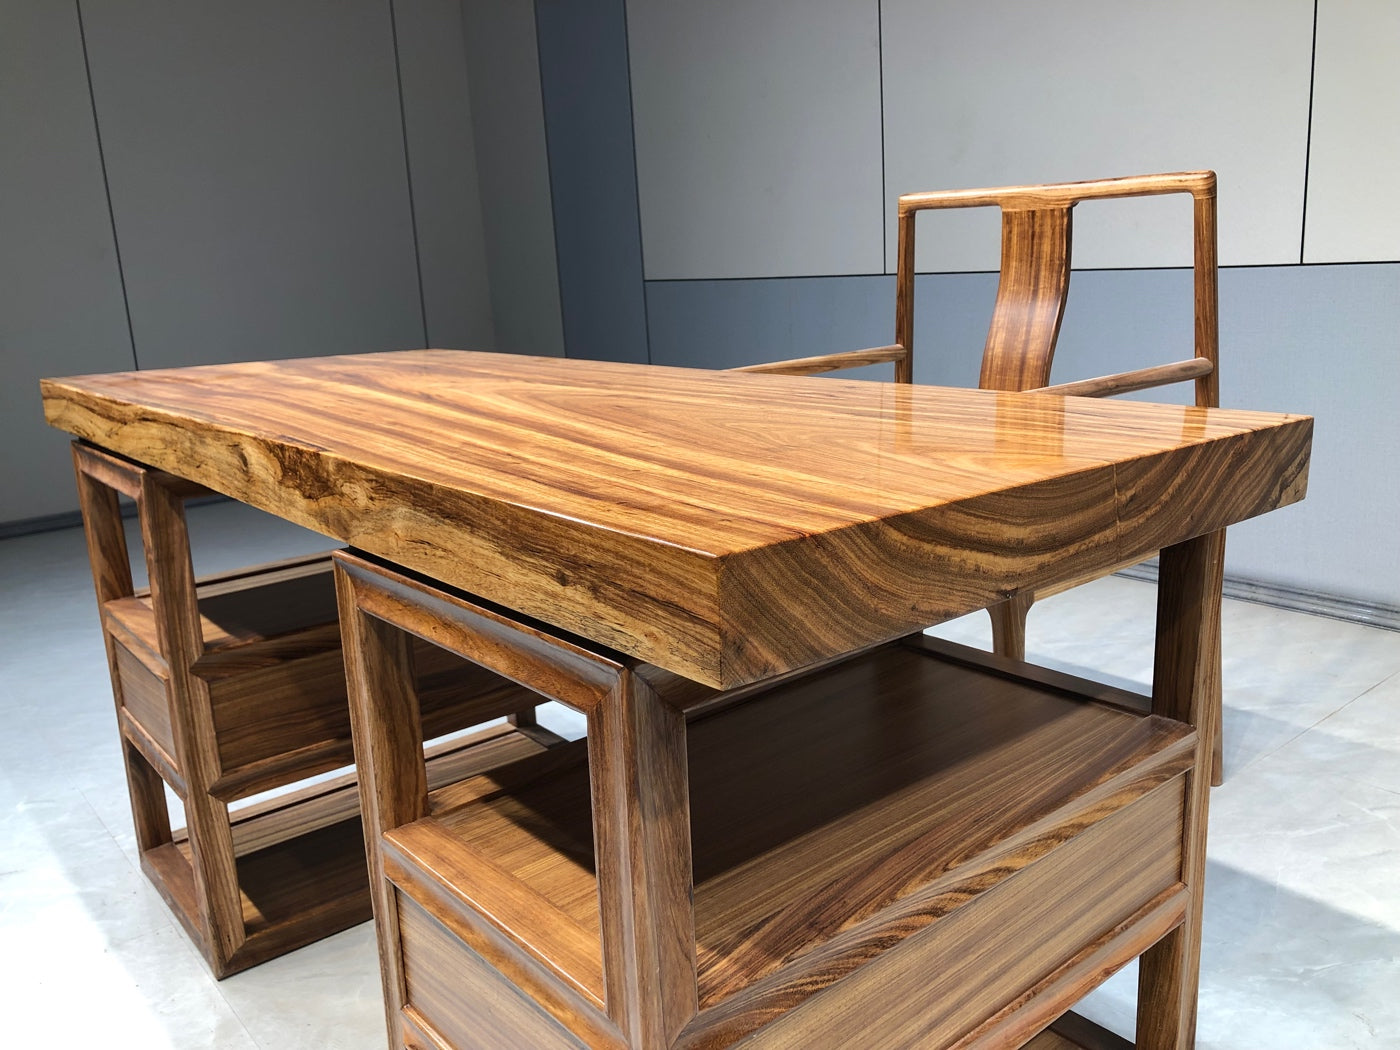 Lastra piana, piano del tavolo in lastra, tavolo da pranzo, tavolo in legno dell'Africa occidentale